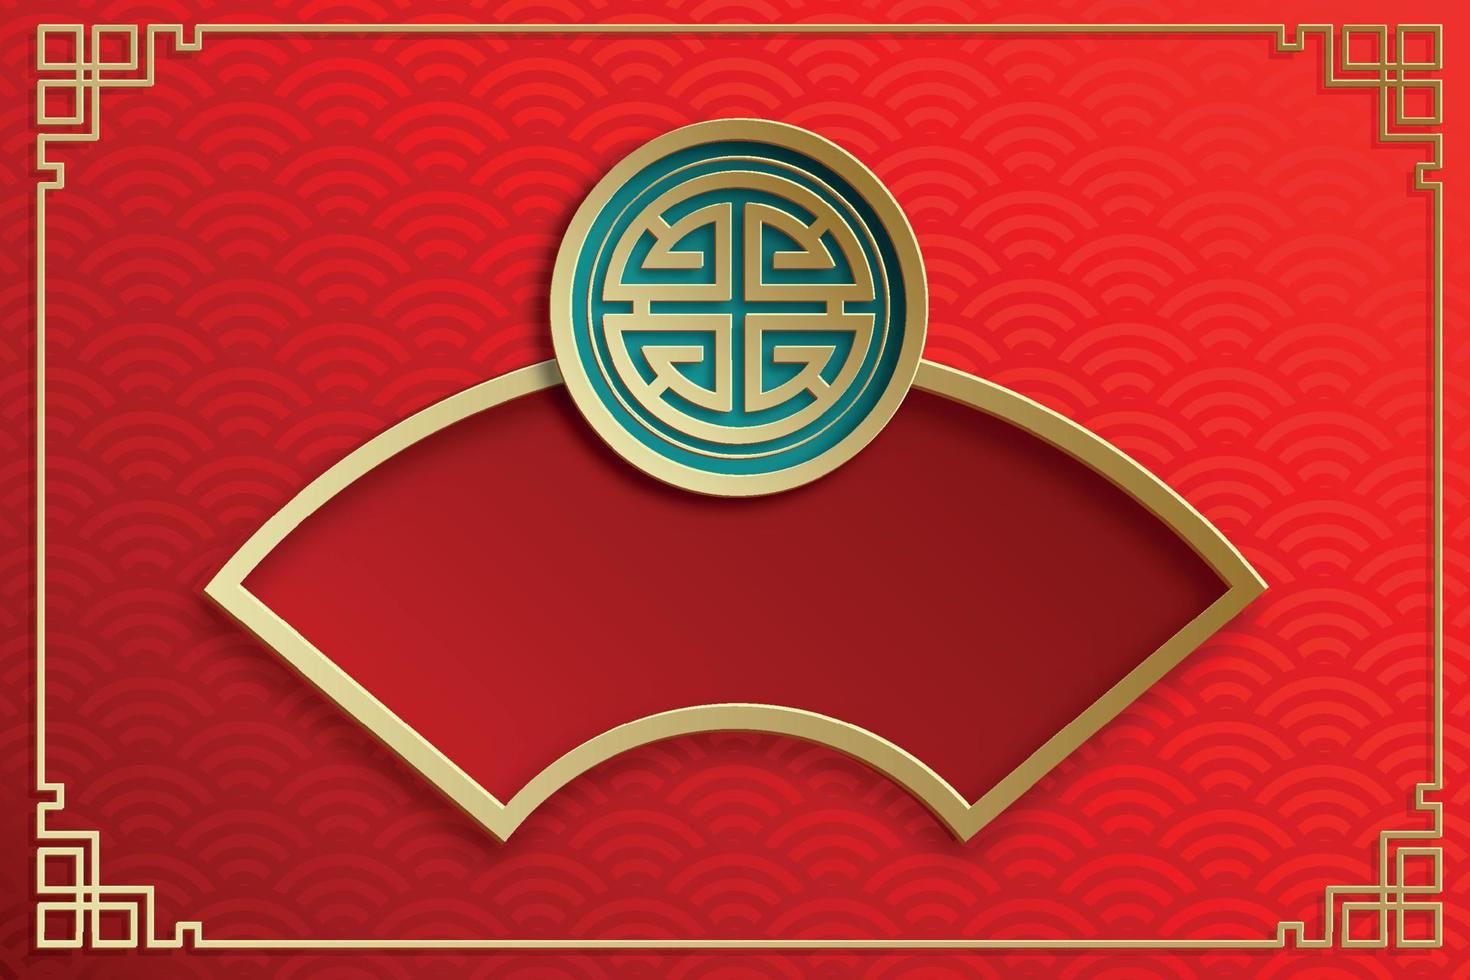 marco chino con elementos asiáticos orientales sobre fondo de color, vector